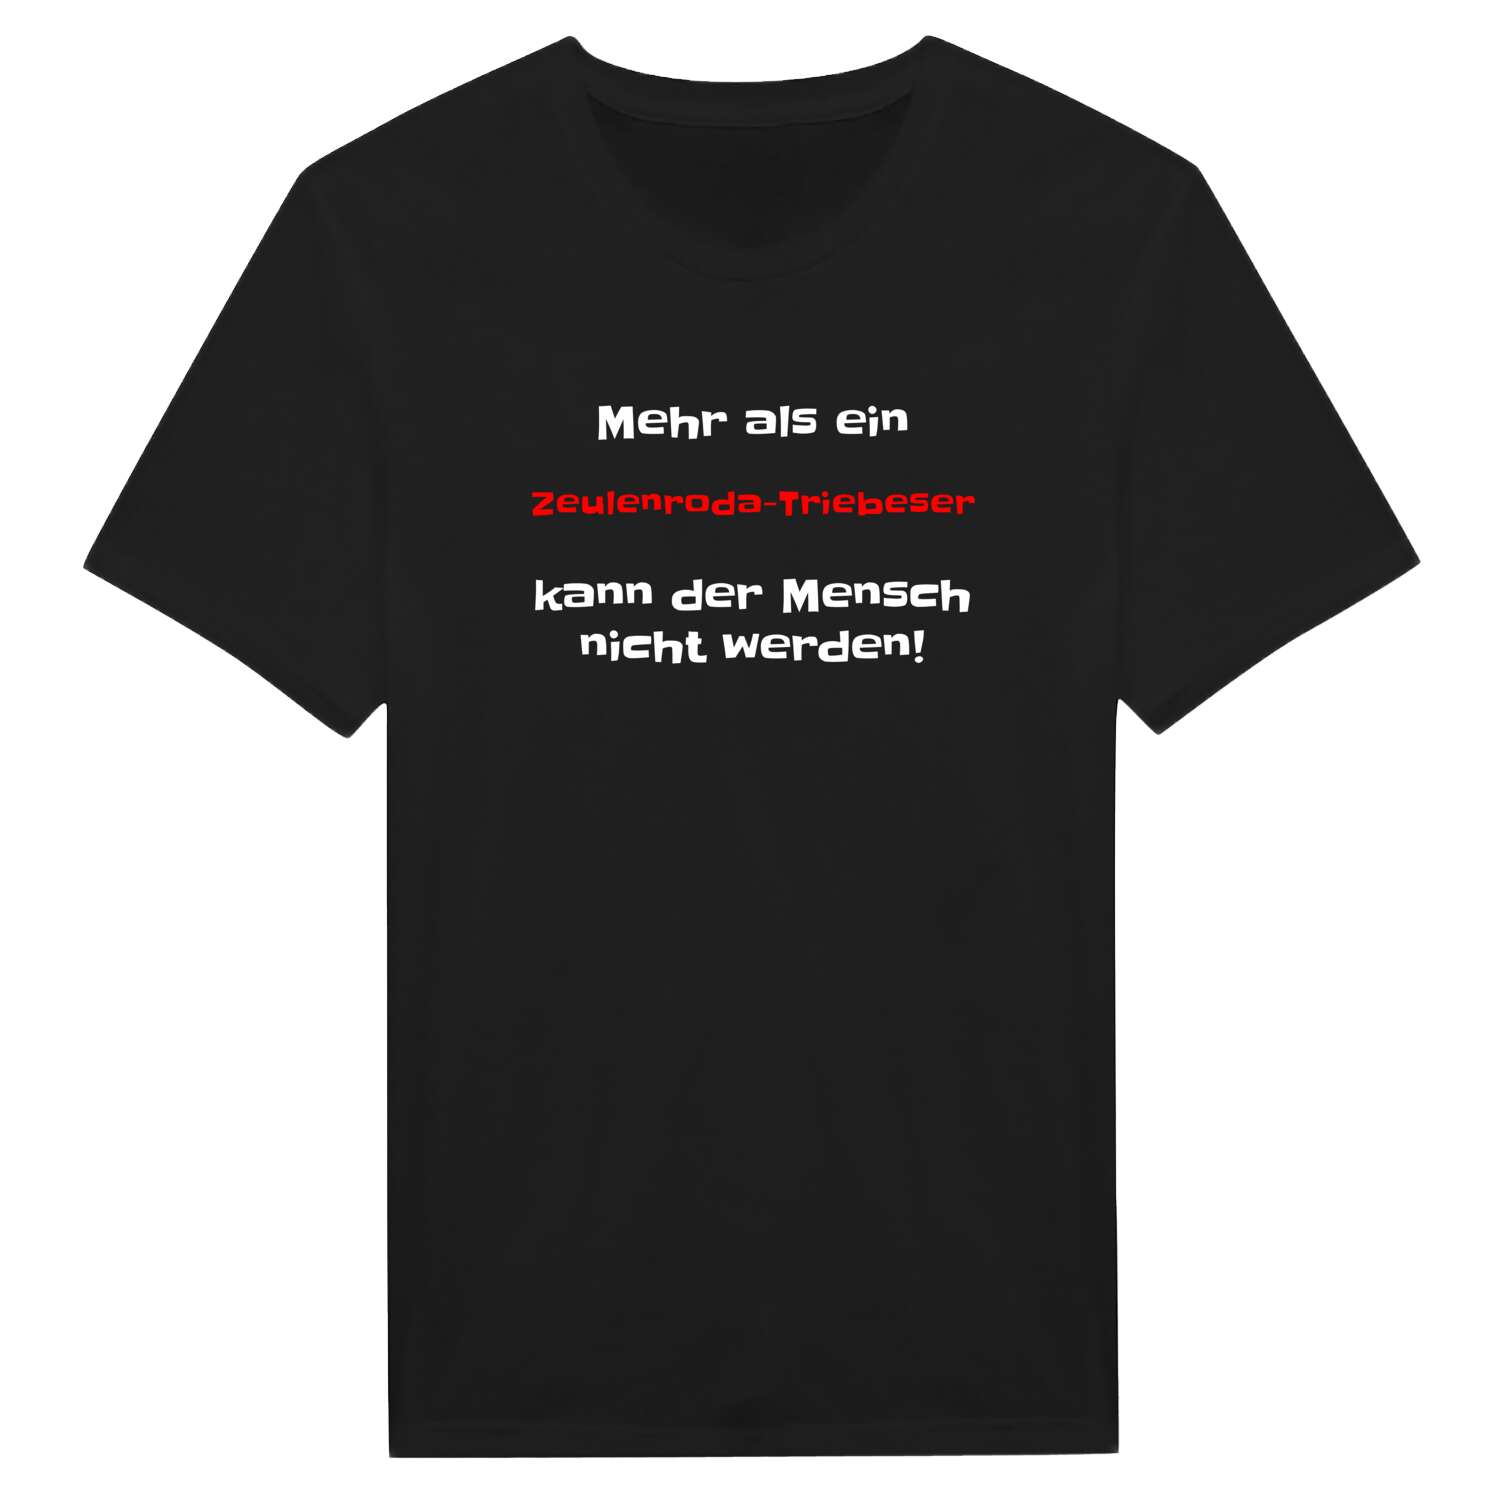 Zeulenroda-Triebes T-Shirt »Mehr als ein«